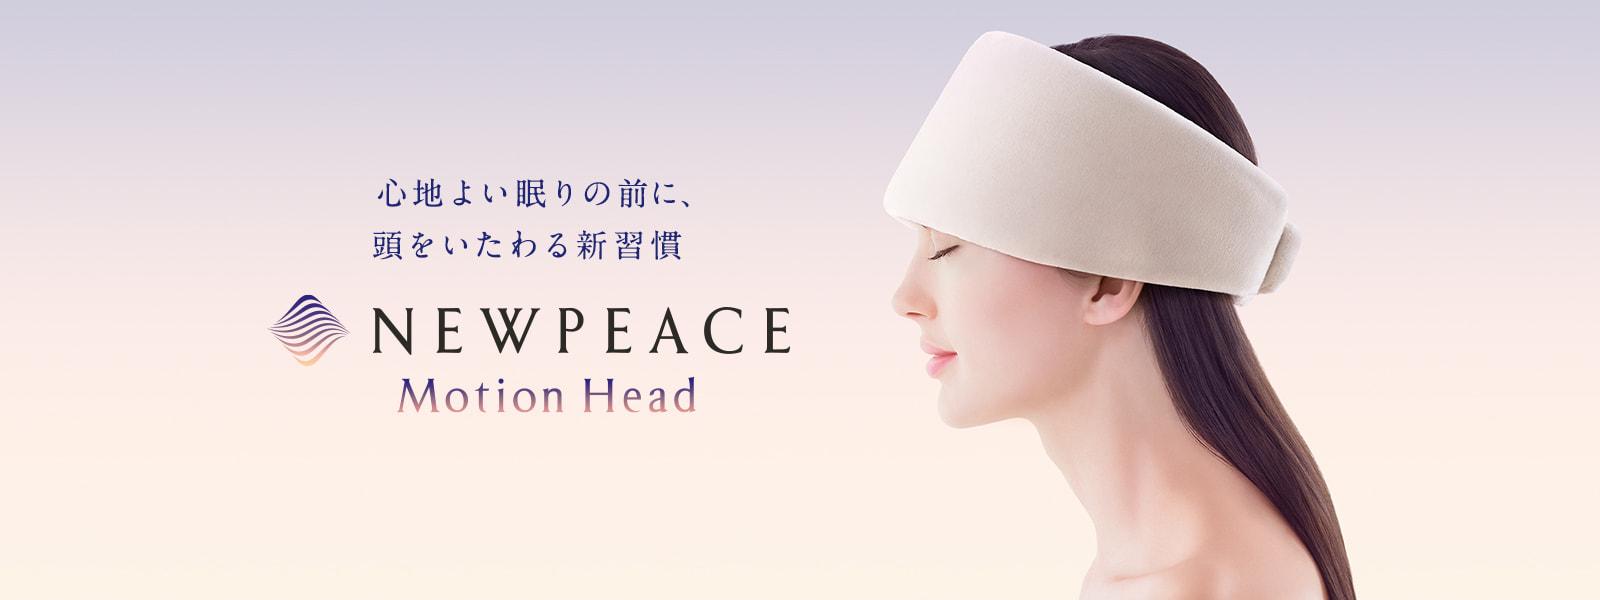 元の価格 NEWPEACE ニューピース モーション ヘッド Motion Head